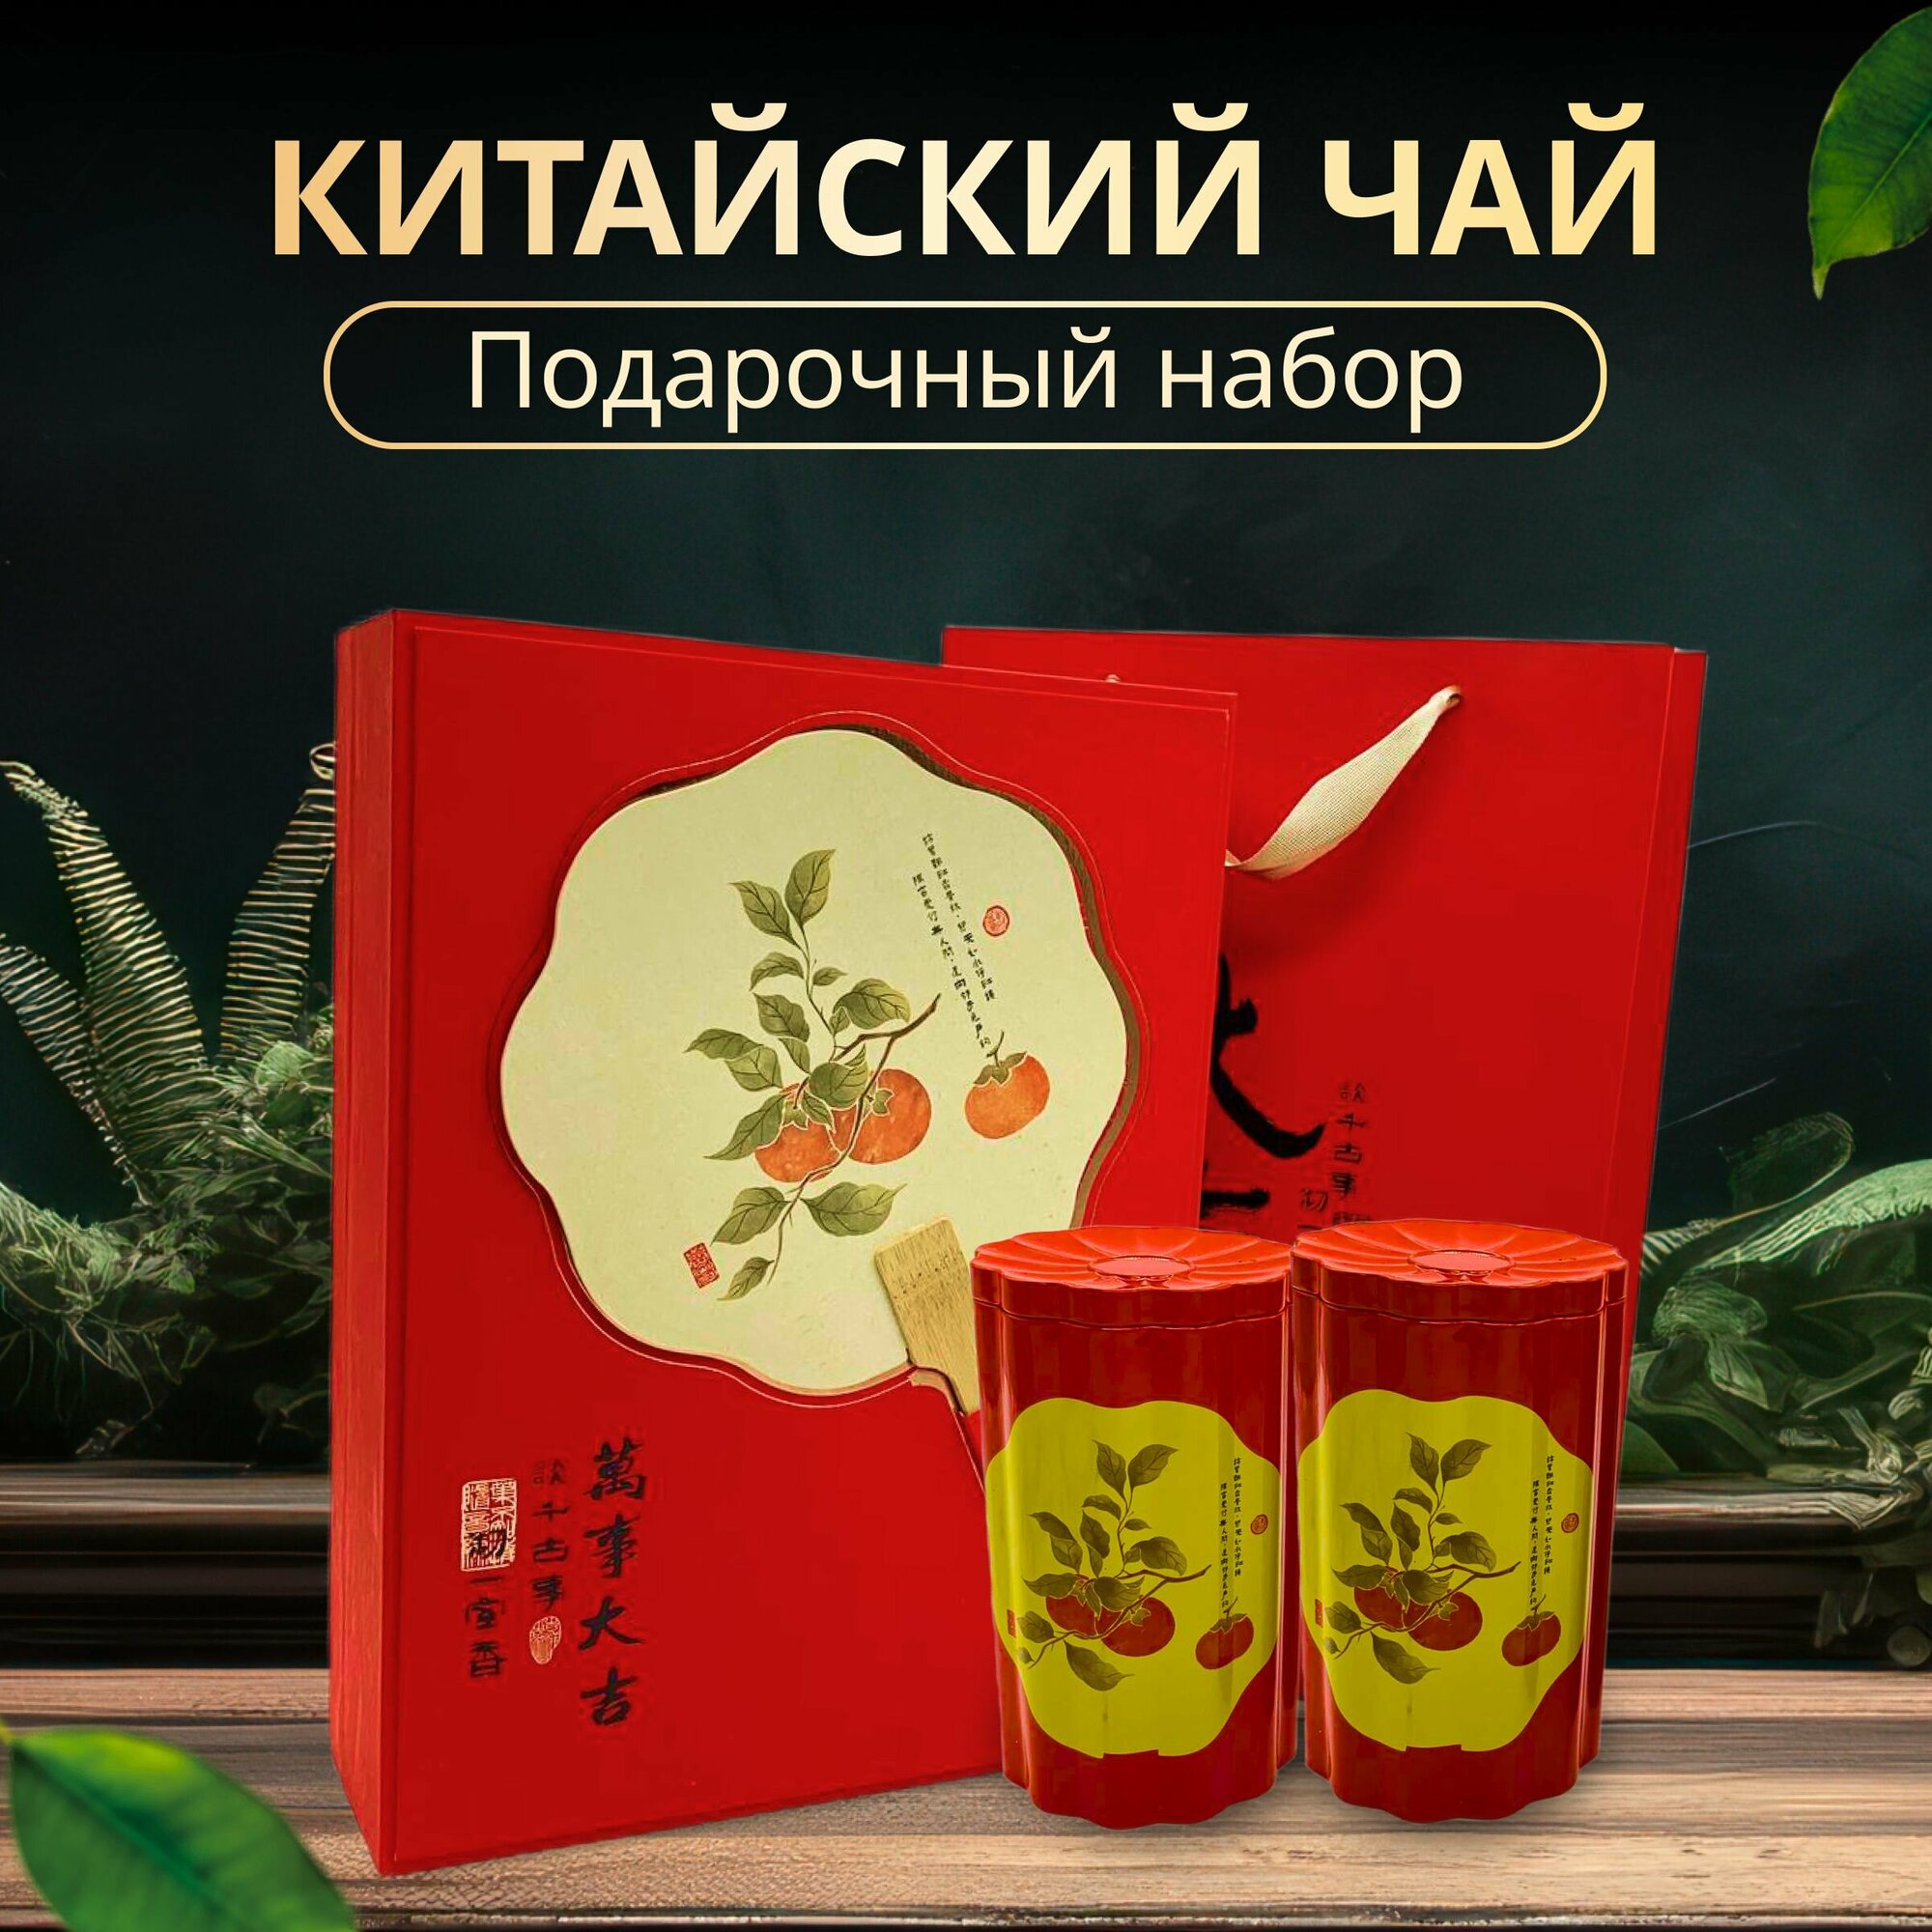 Подарочный набор китайского чая Цзинь Цзюнь Мэй с веером